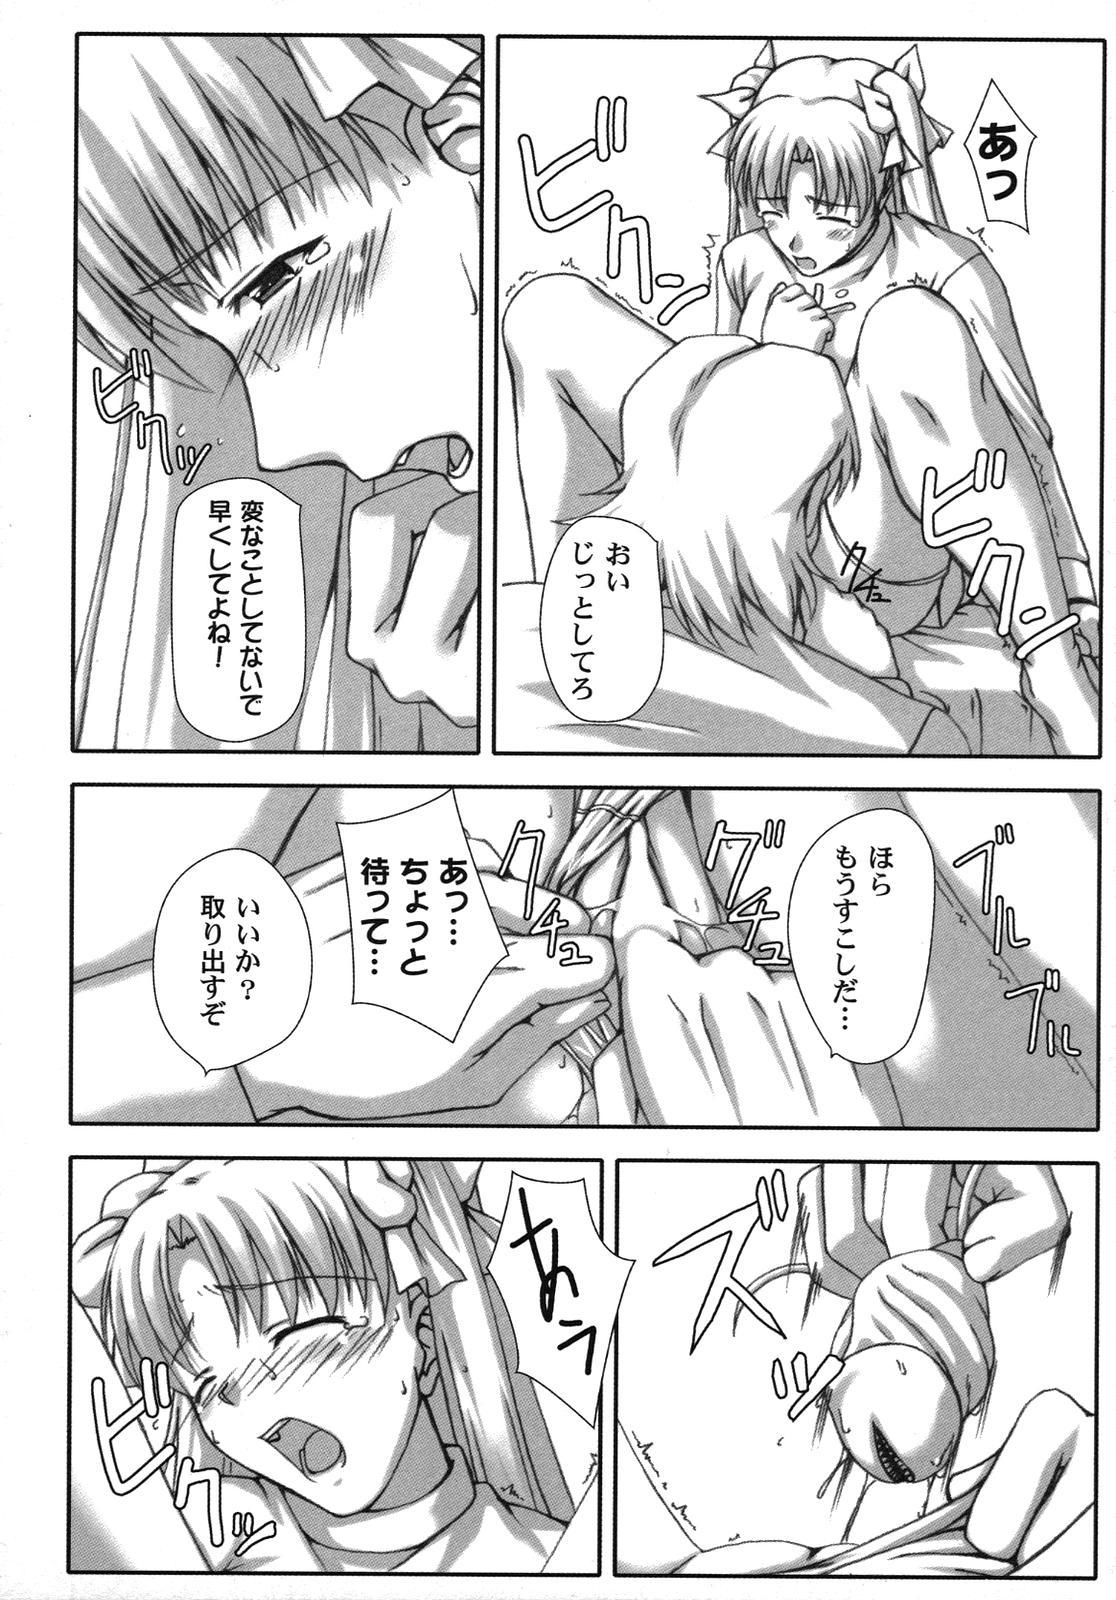 Fate Knight Vol. 6 8